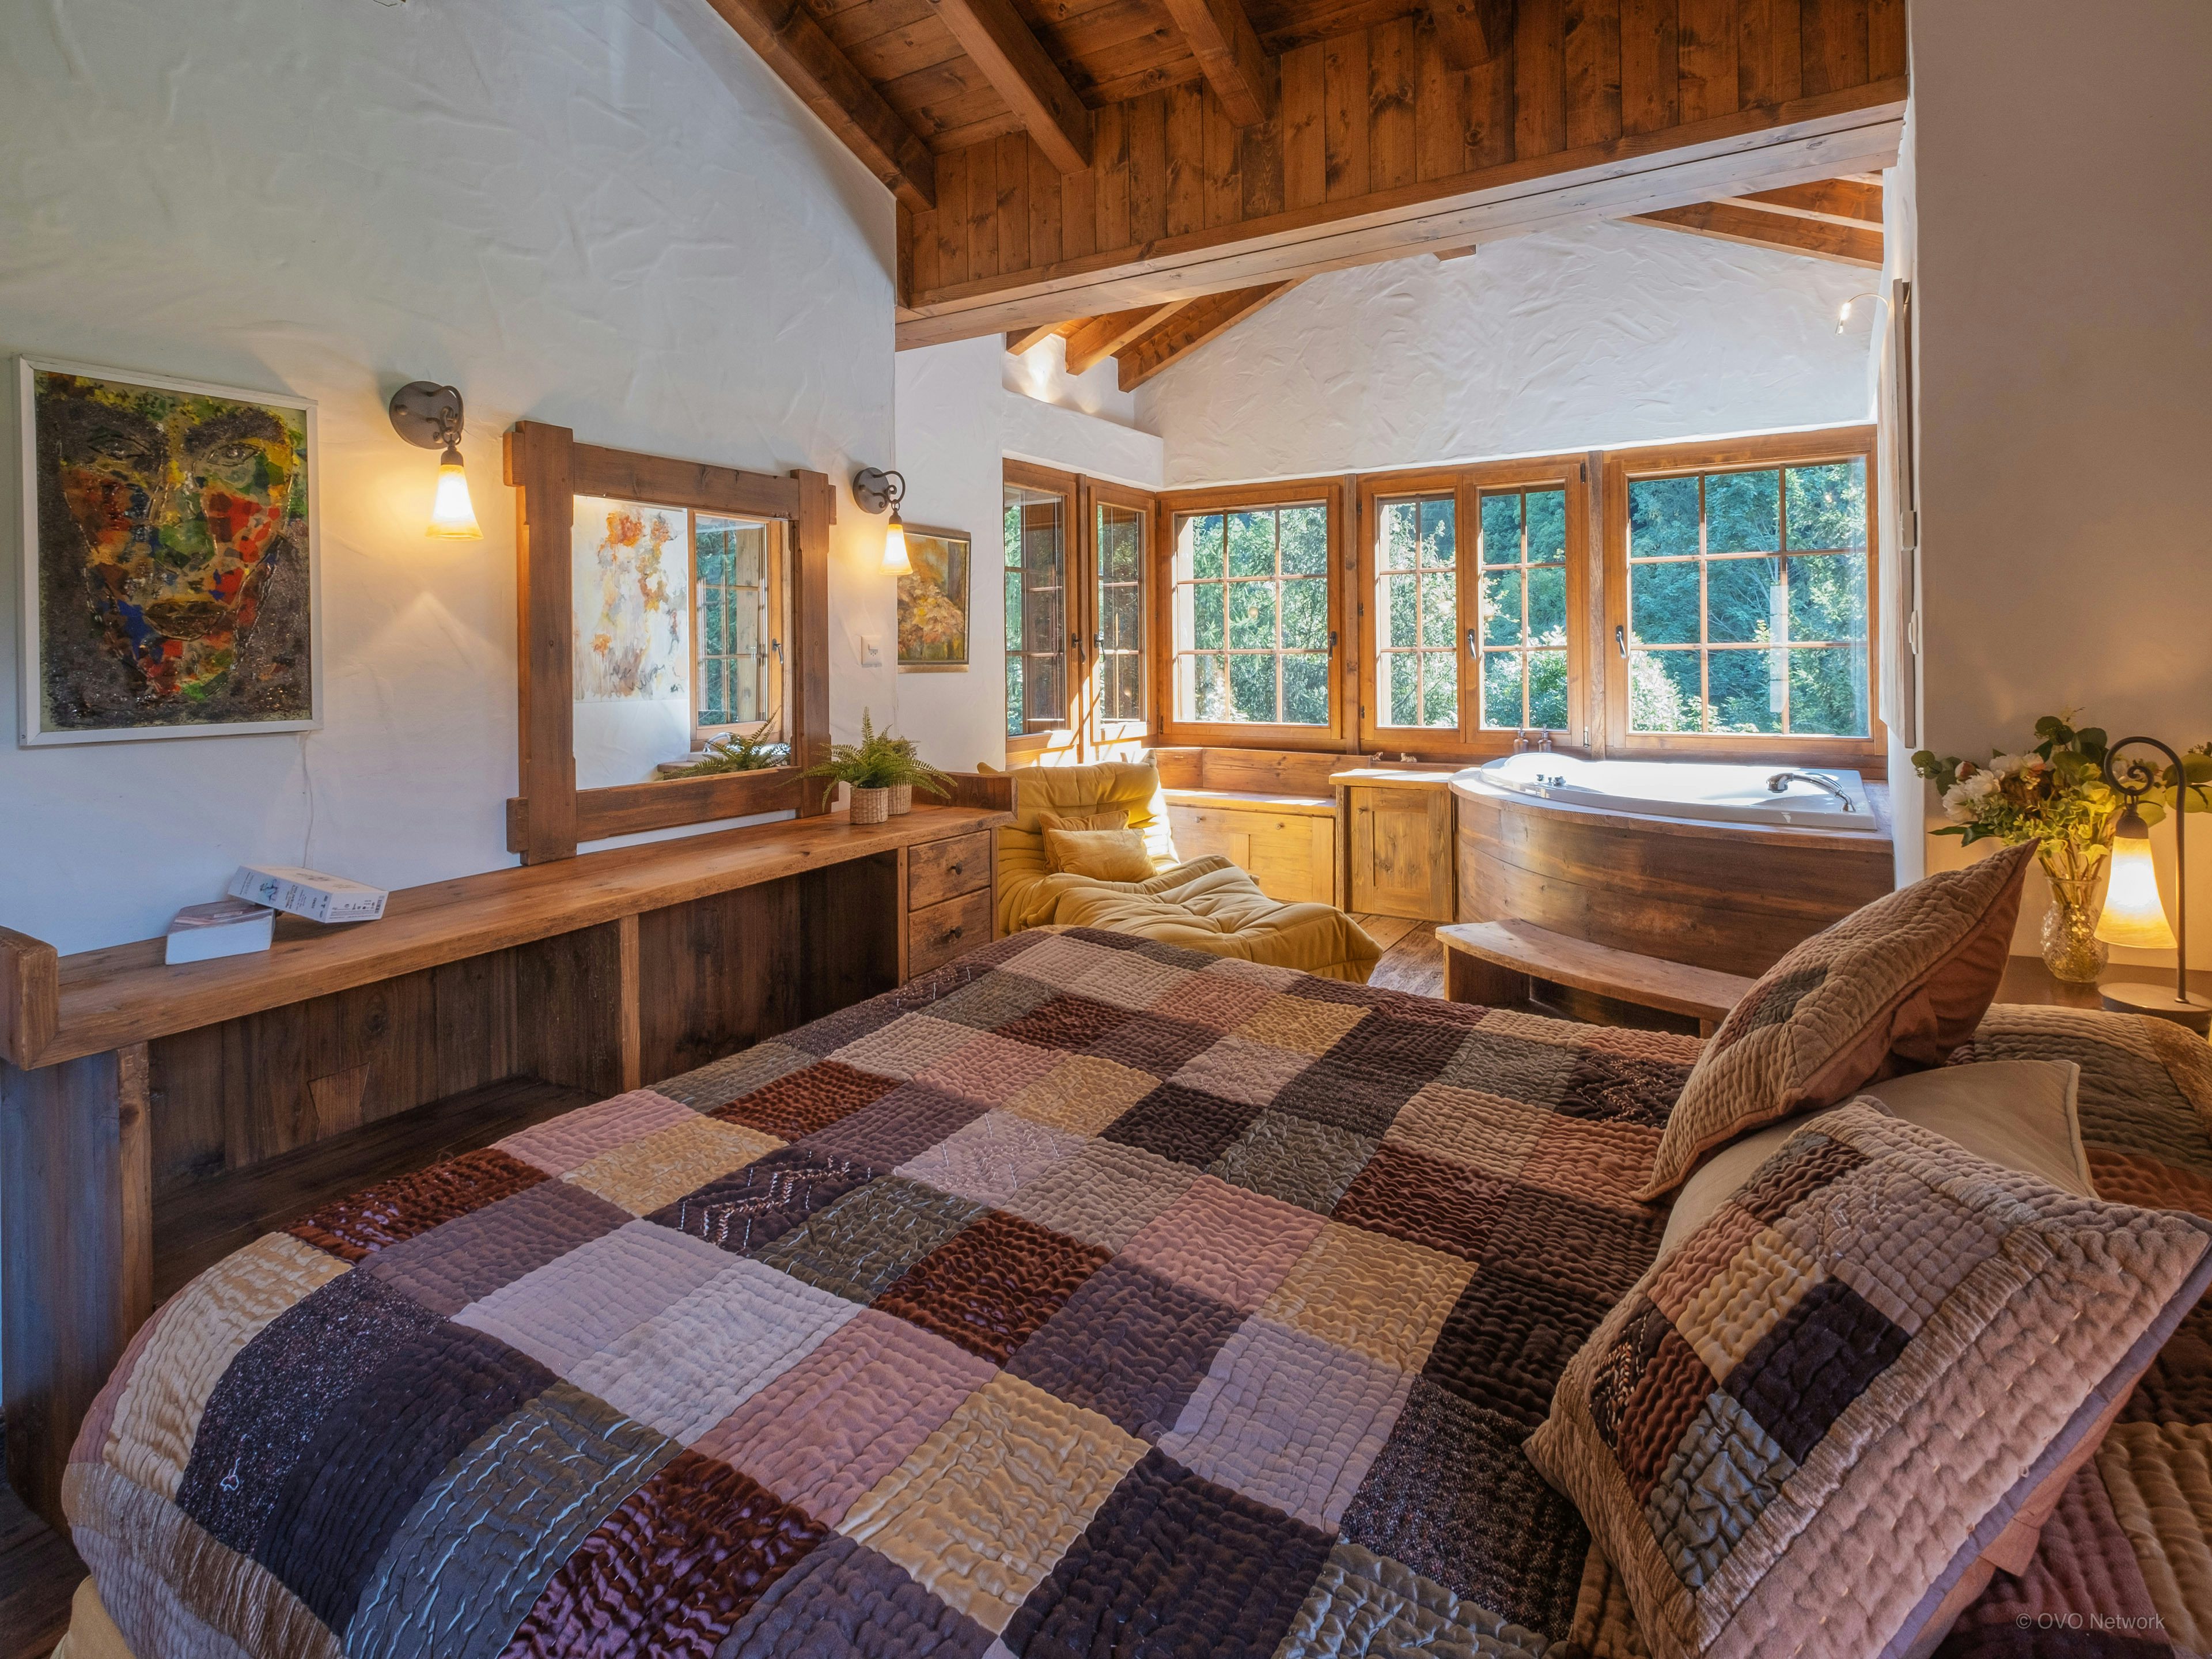 L'une des chambres du chalet avec un grand lit et une baignoire d'angle, donnant vue sur la nature environnante grâce à la présence de grandes fenêtres.